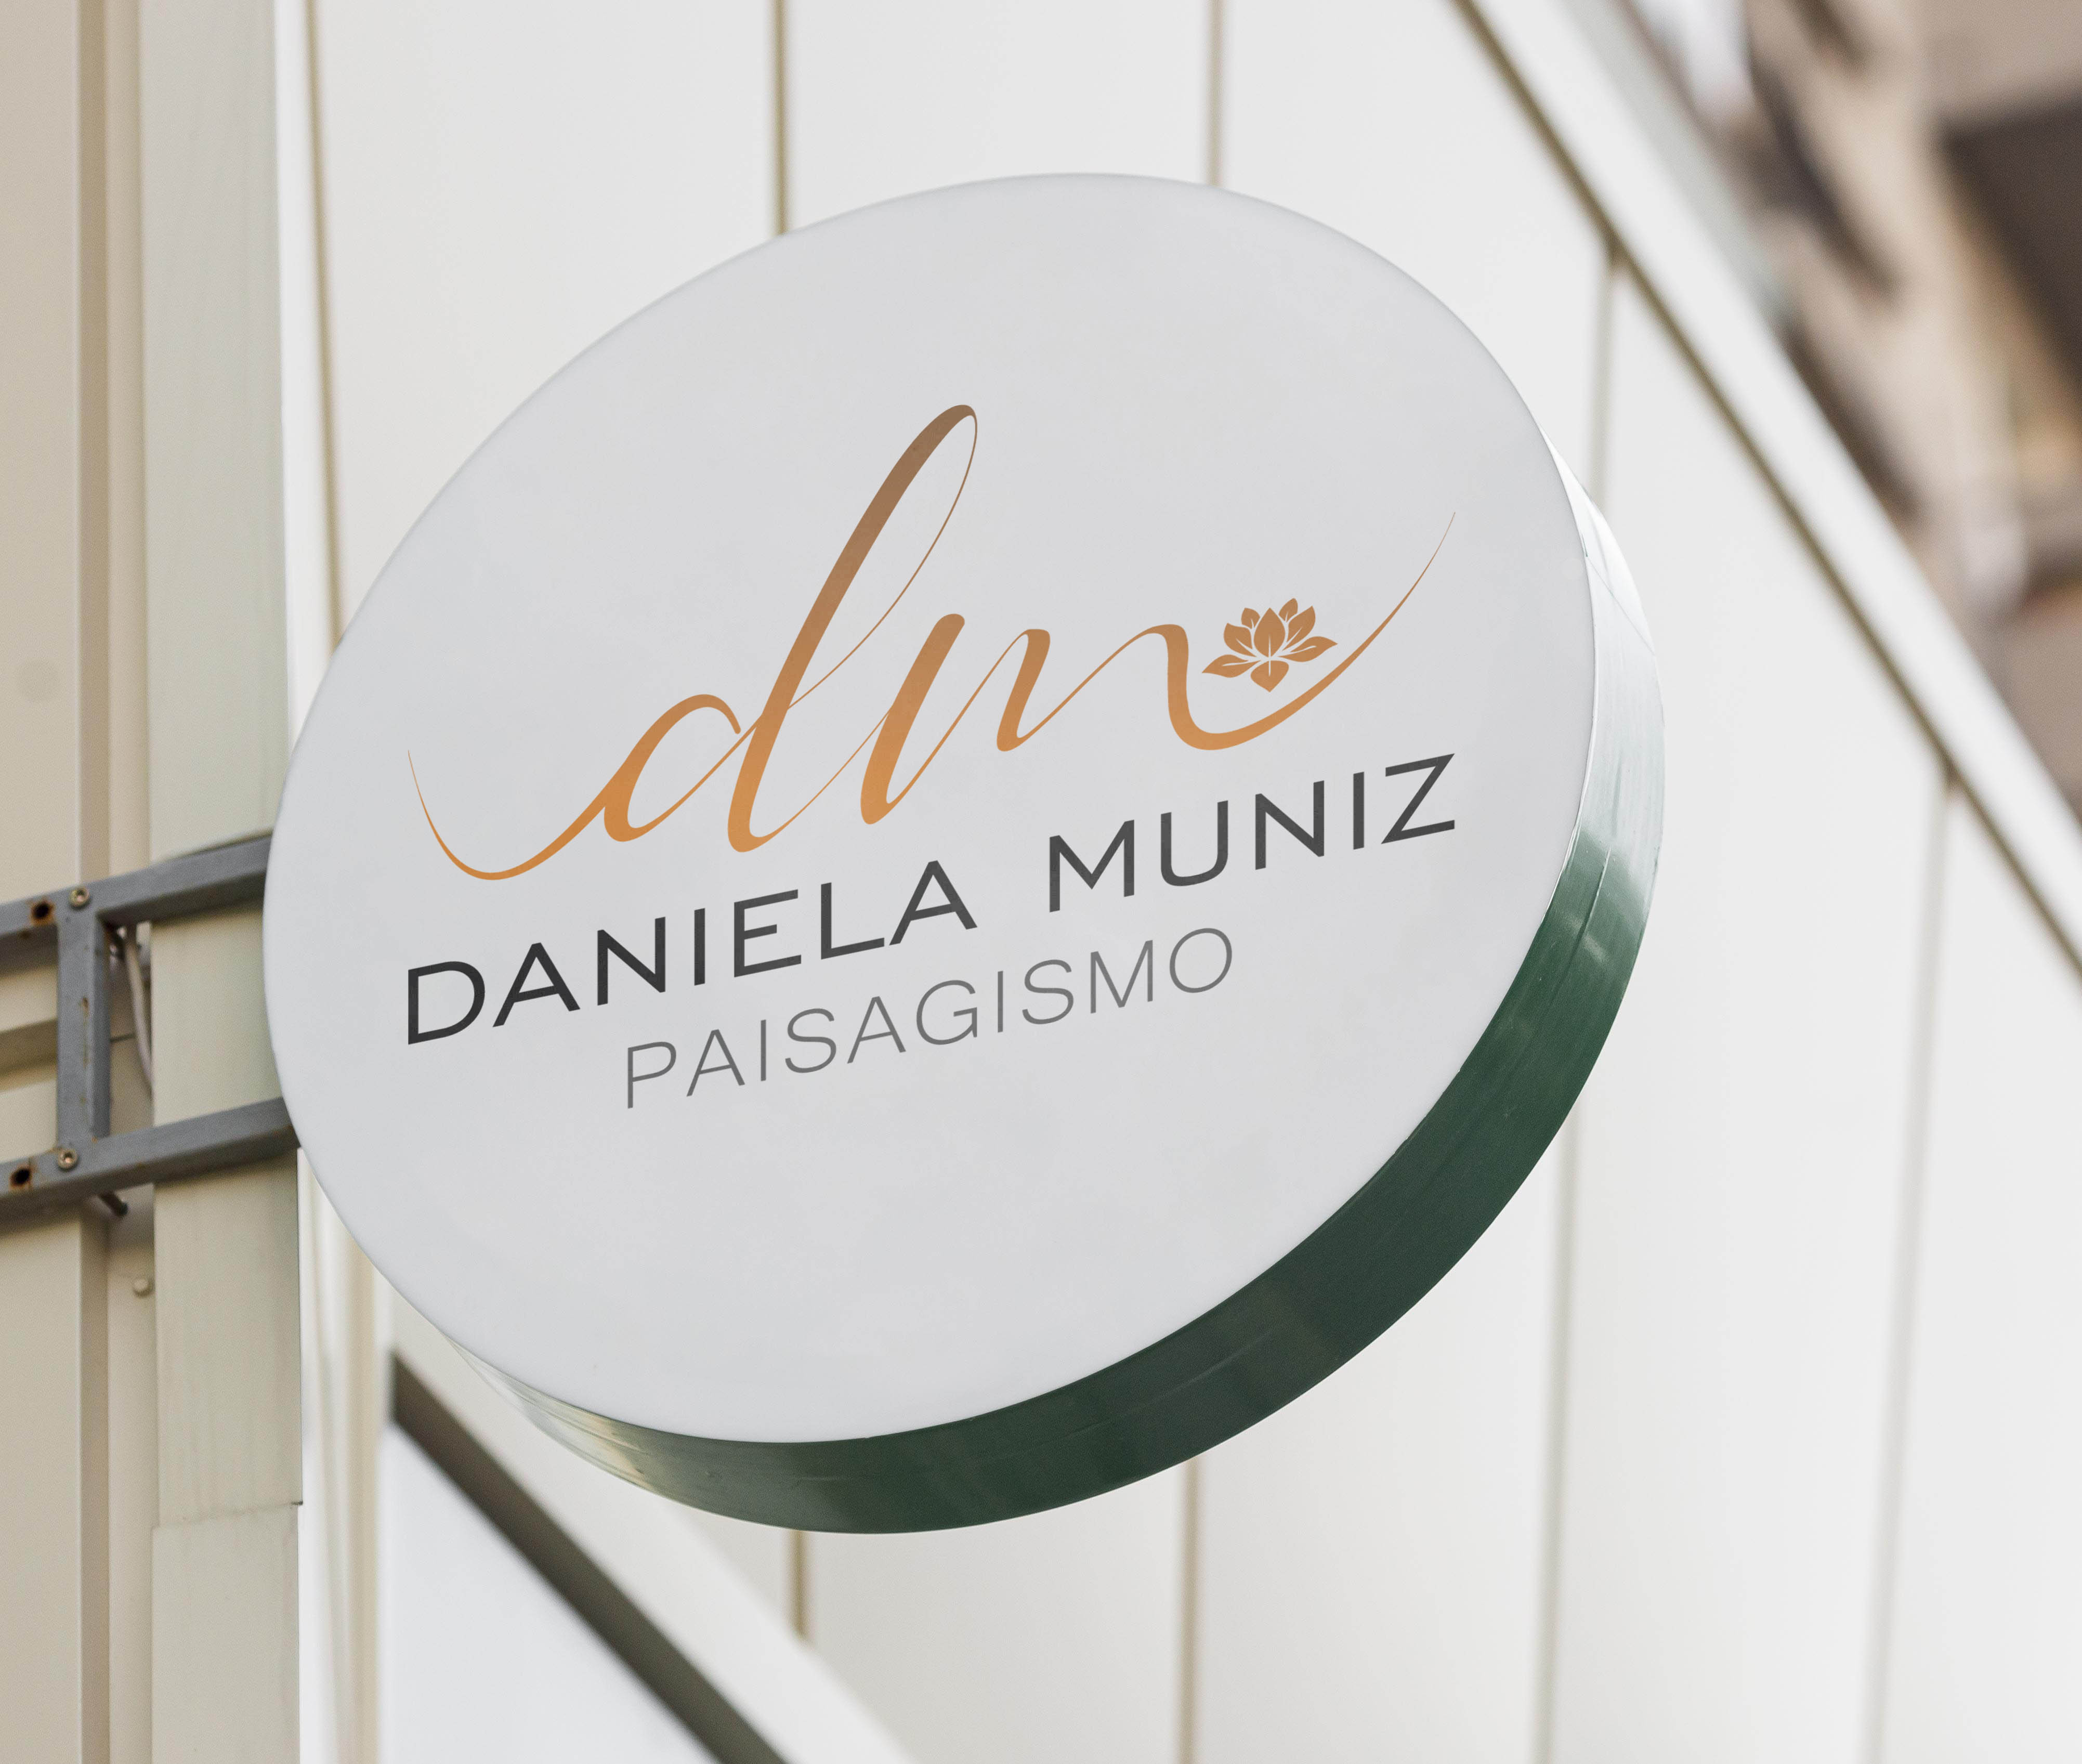 Daniela Muniz - Paisagismo